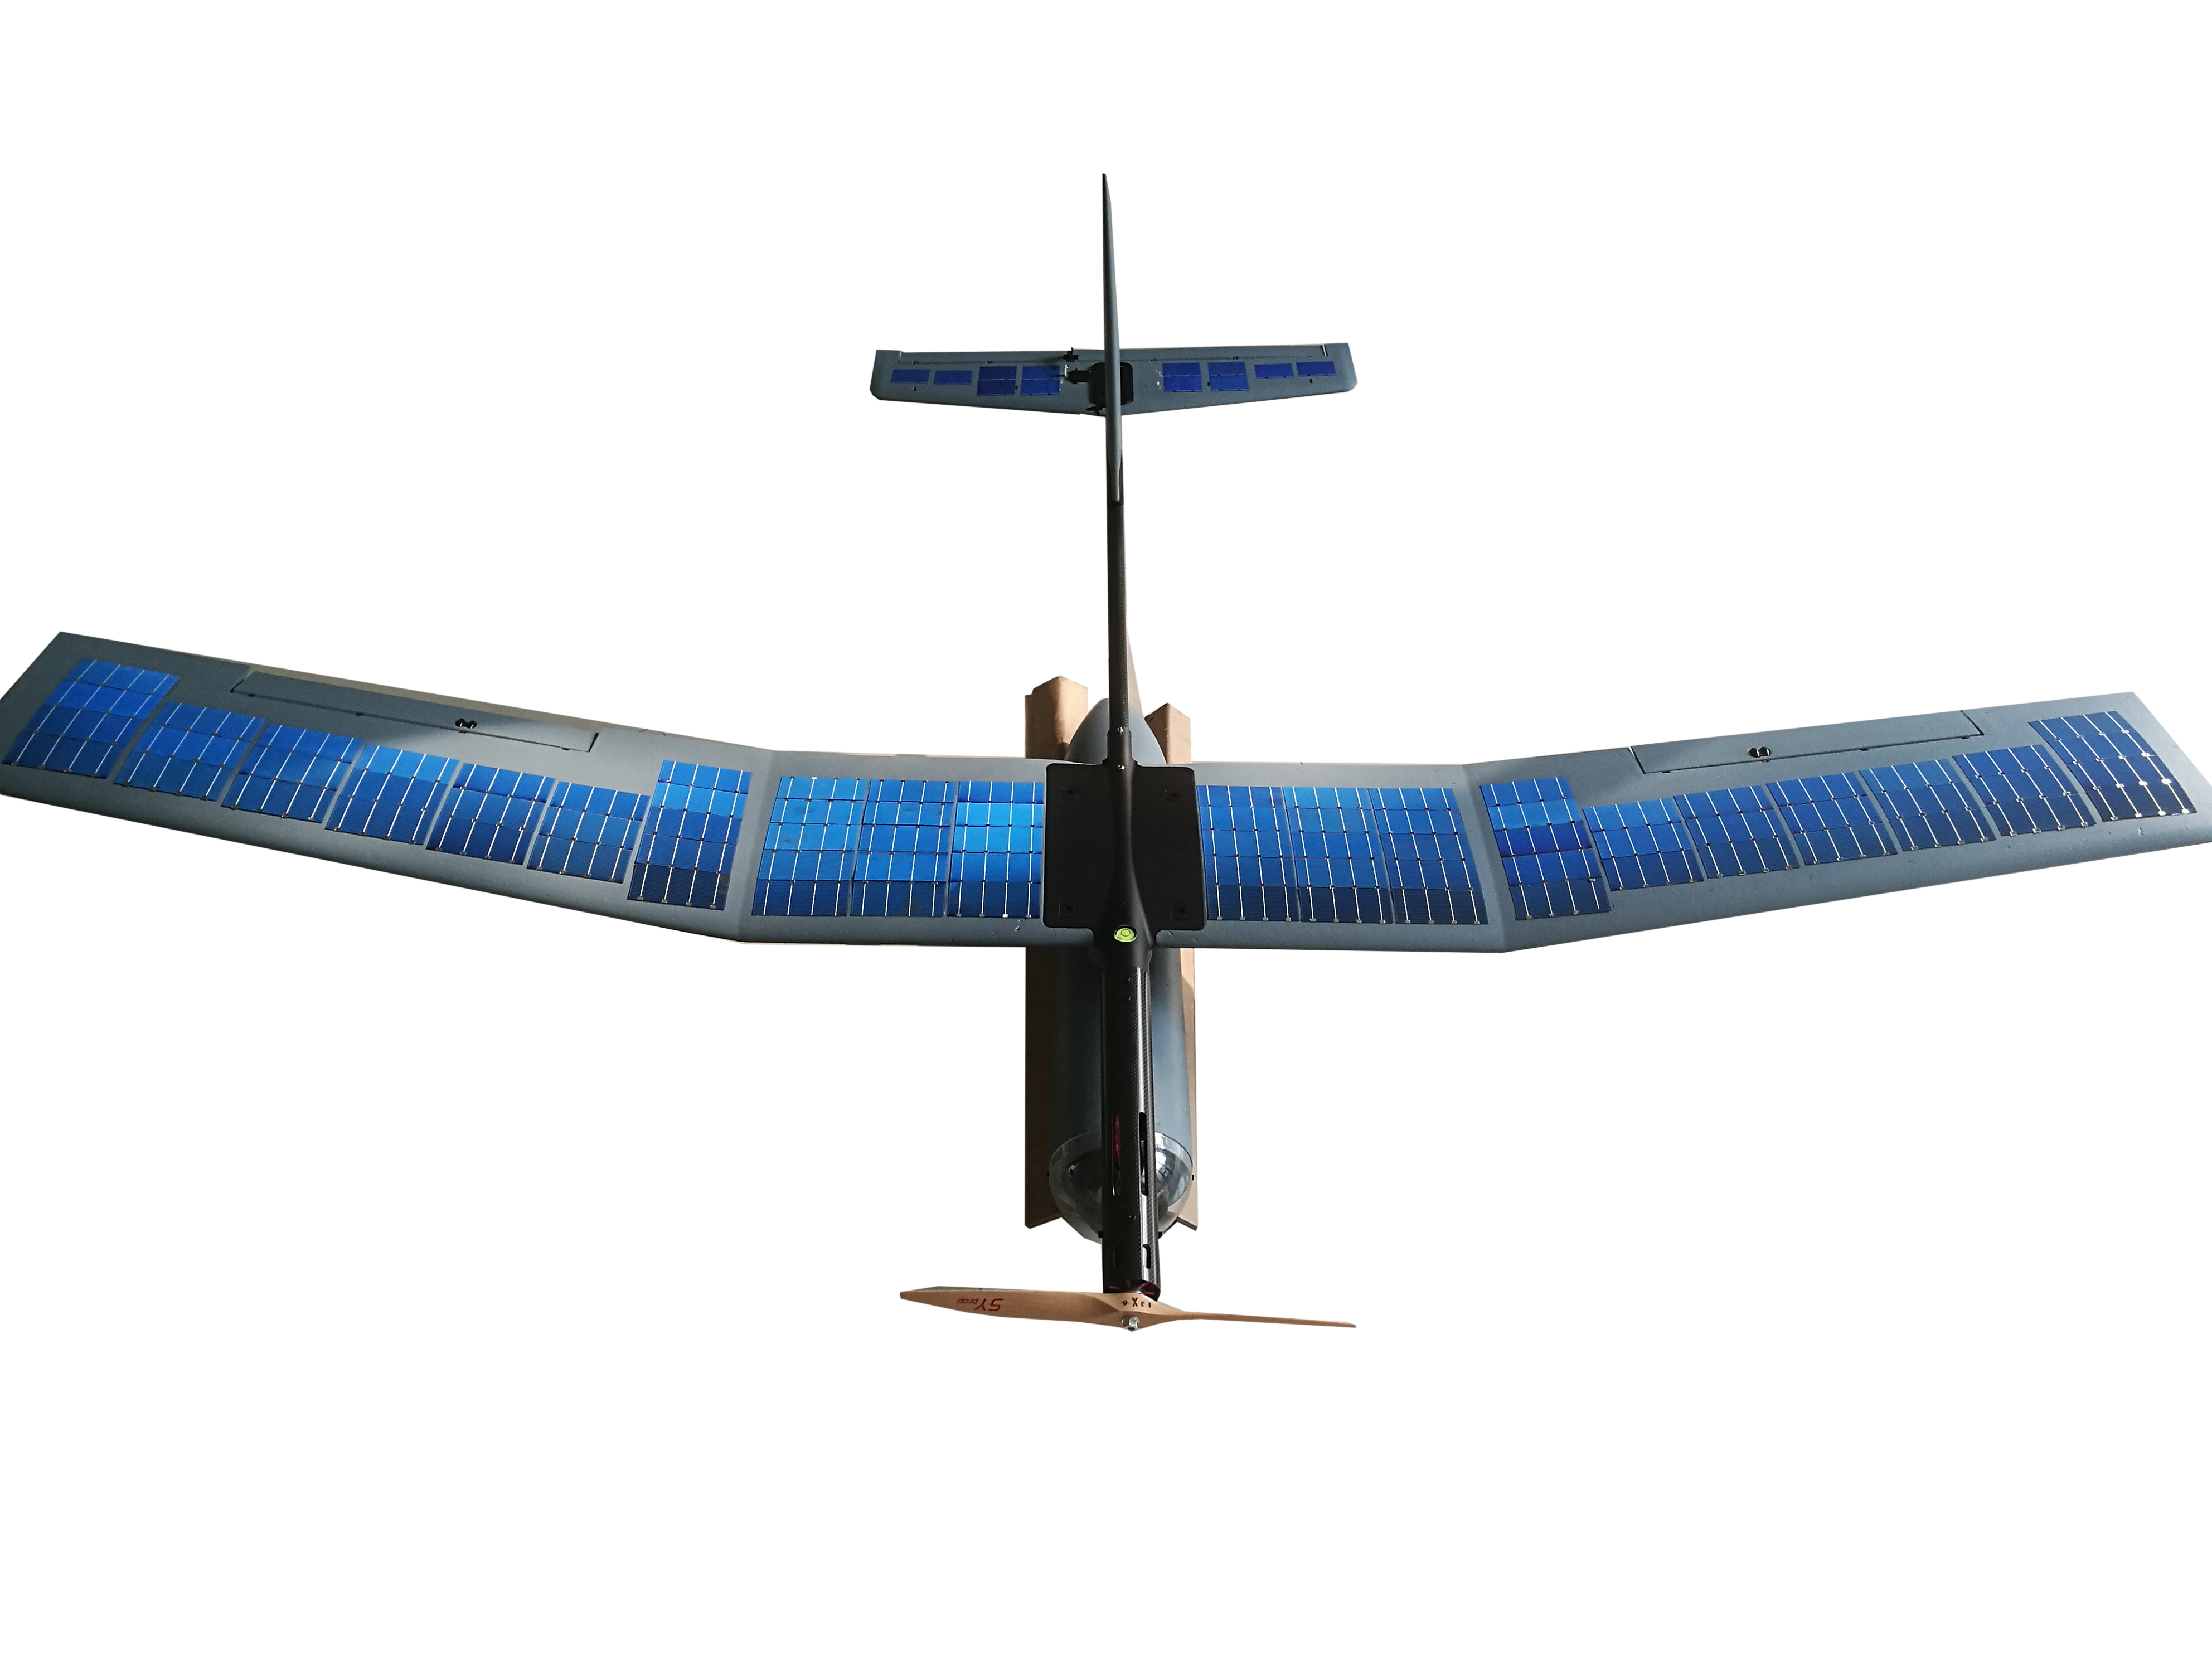 上海太阳能工程技术研究中心有限公司“阳光兰雀”无人机照片1.jpg